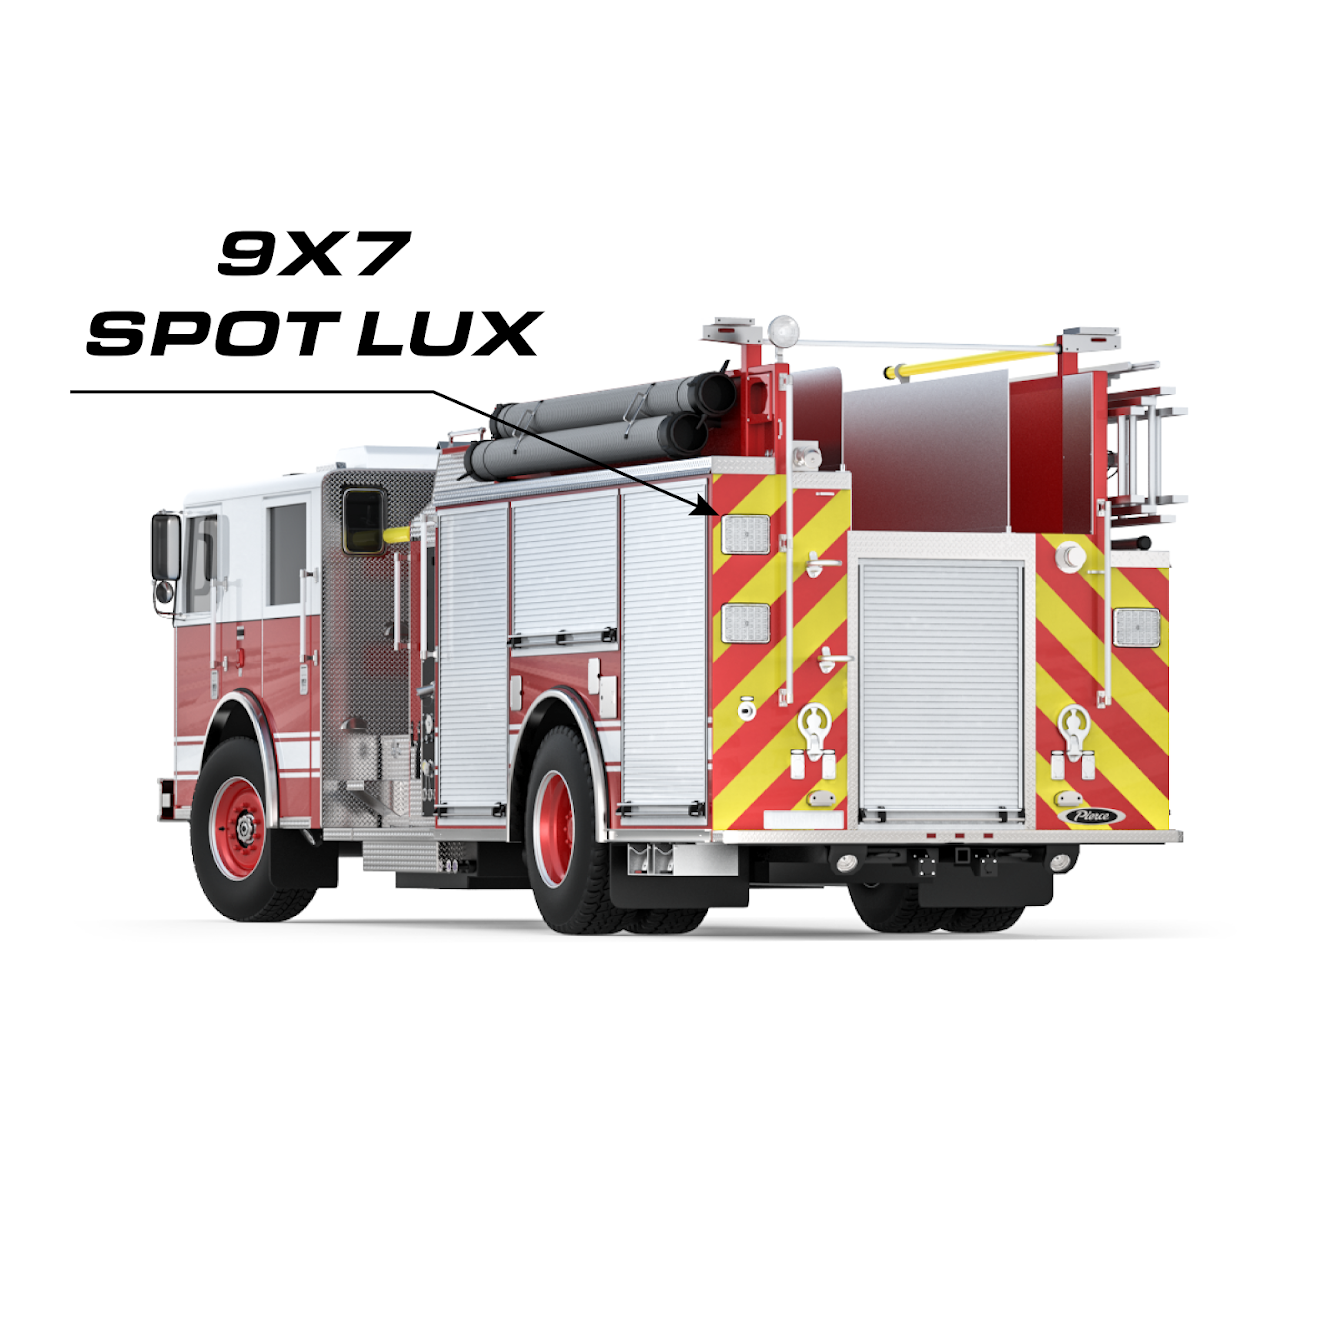 Spot Lux 9x7